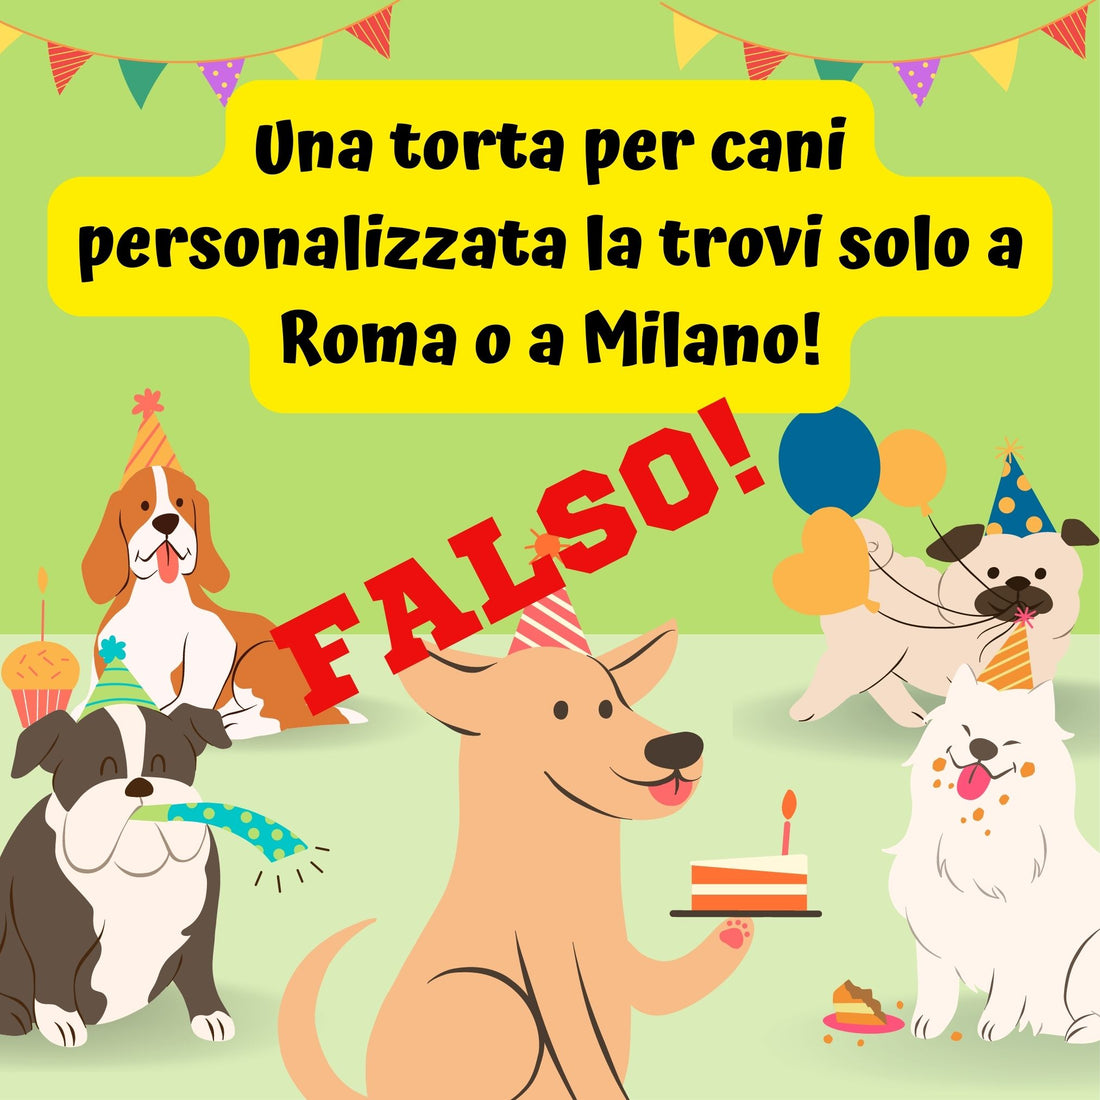 Una torta per cani personalizzata la trovi solo a Roma o a Milano! FALSO